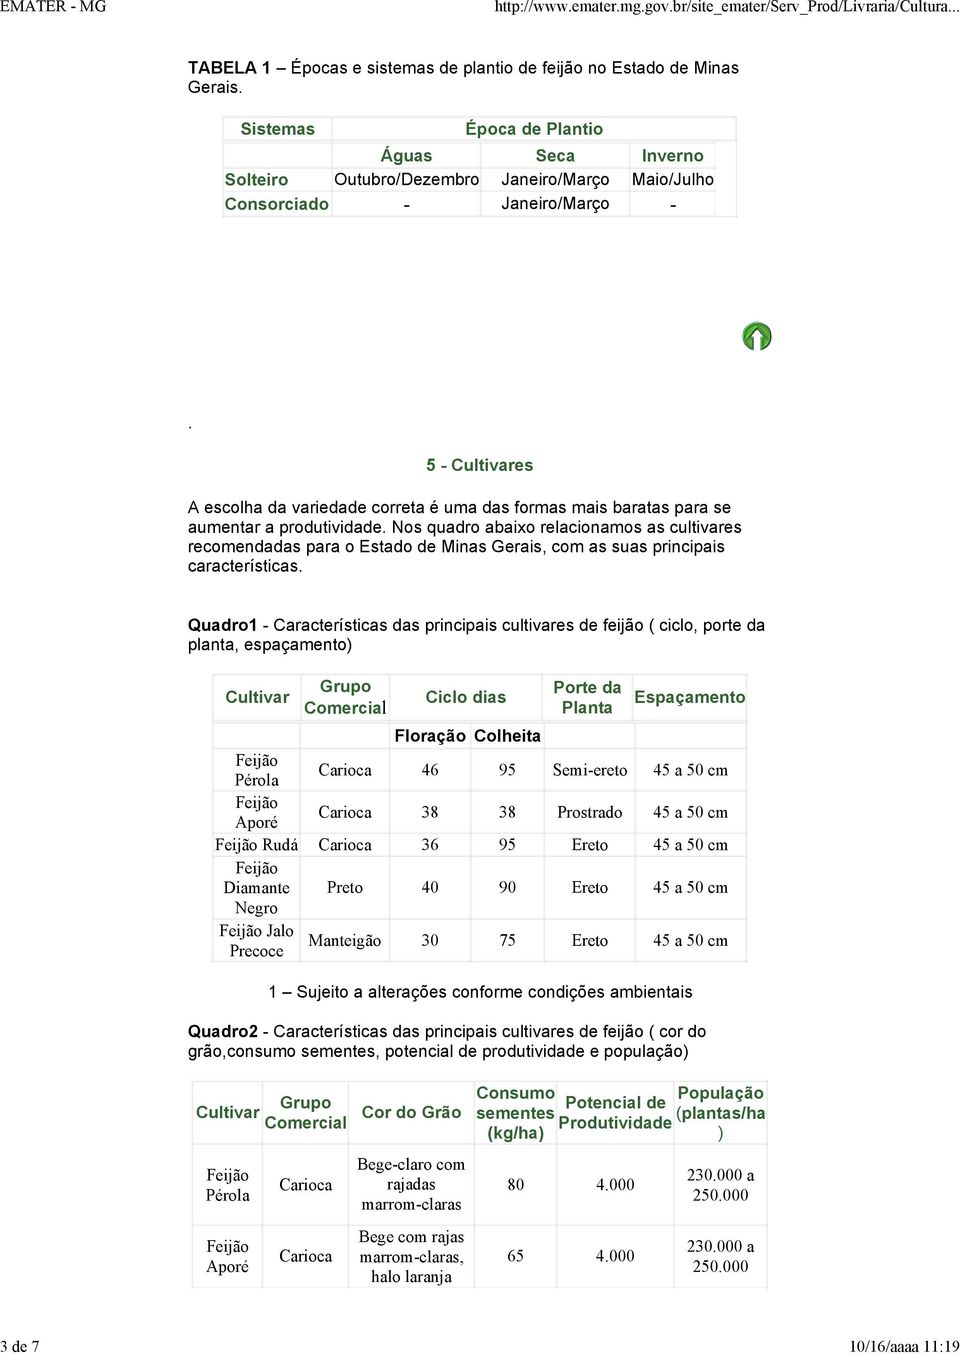 para o Estado de Minas Gerais, com as suas principais características Quadro1 - Características das principais cultivares de feijão ( ciclo, porte da planta, espaçamento) Cultivar Grupo Comercial